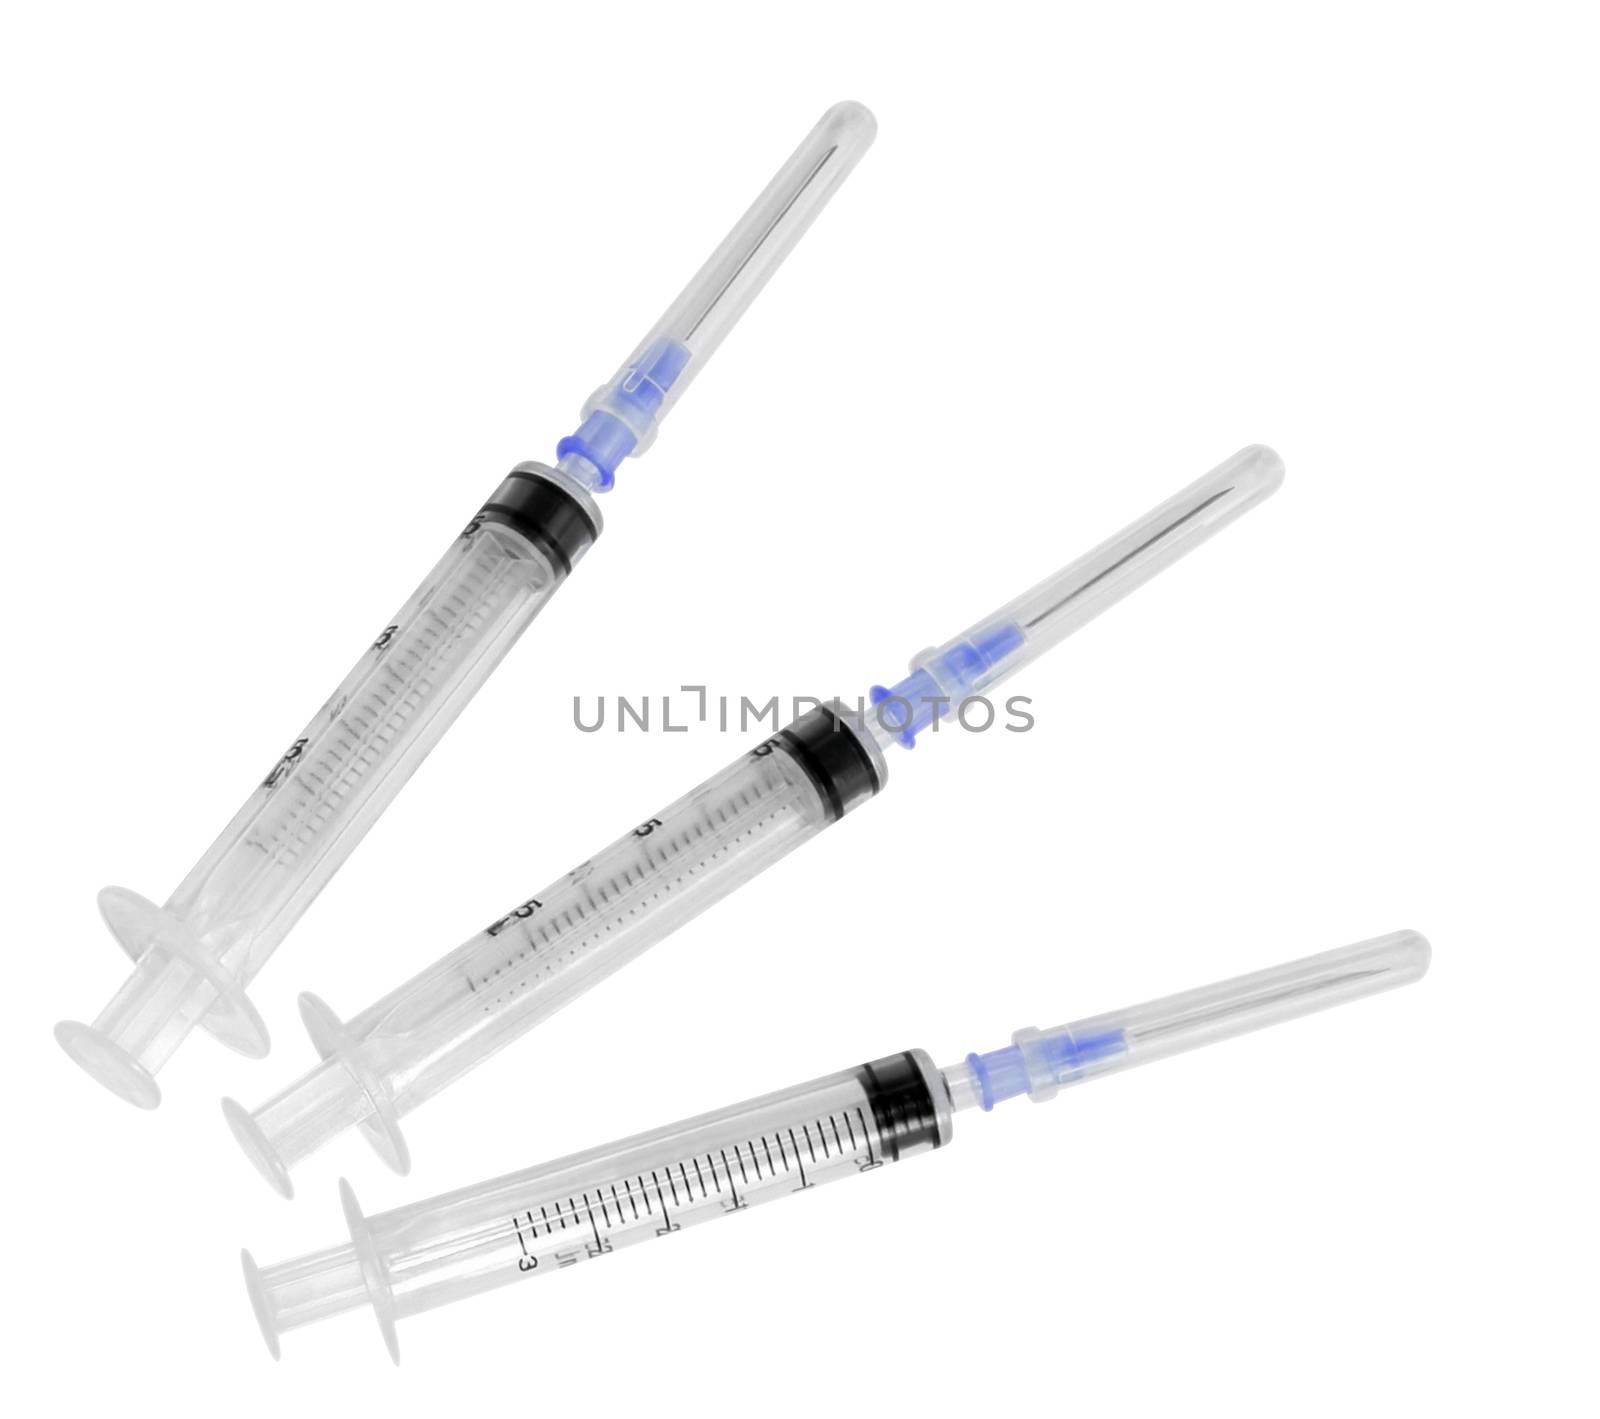 Three empty syringes by Venakr